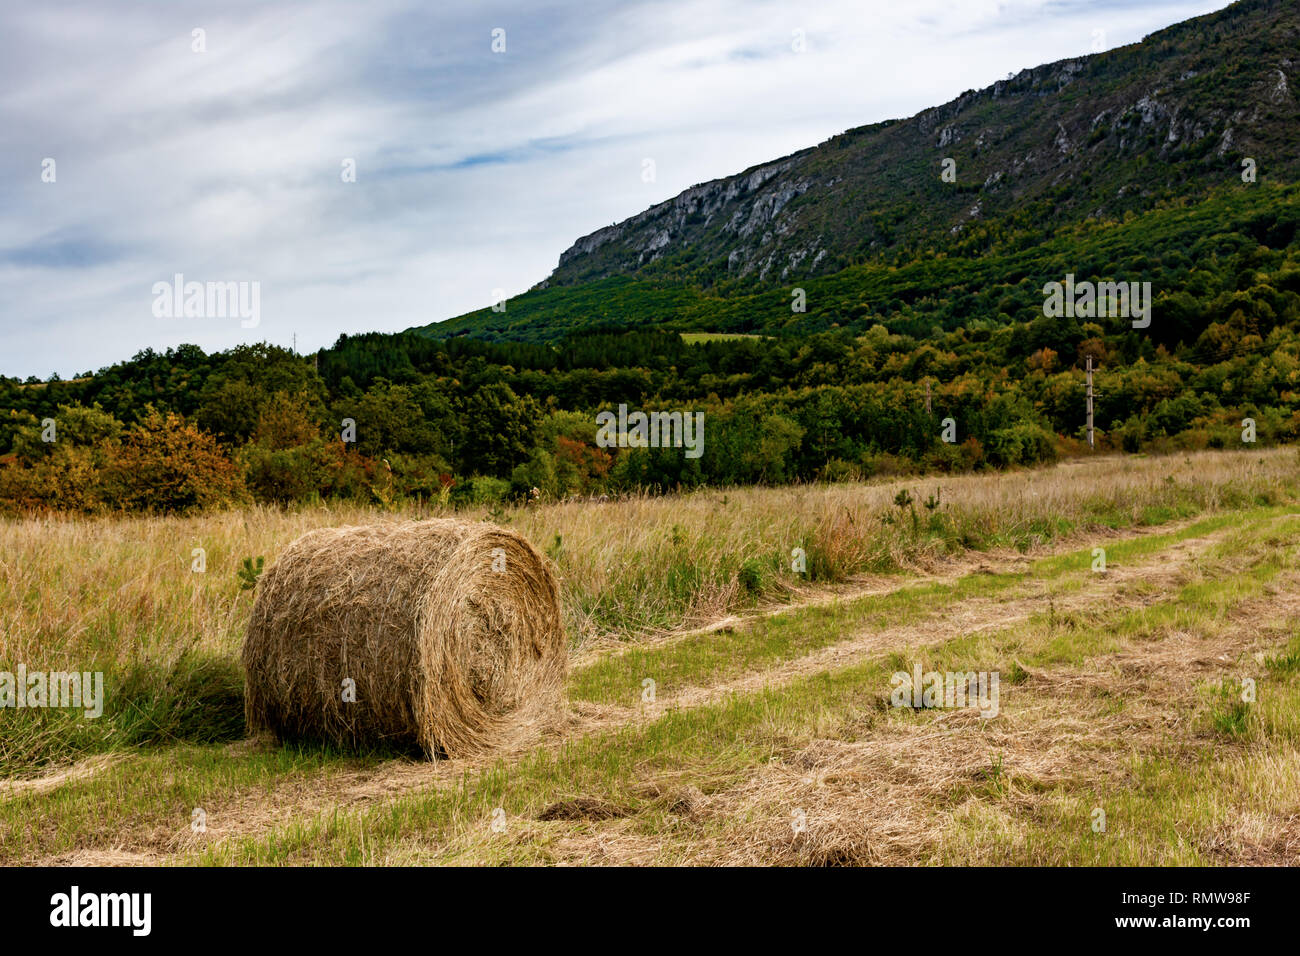 Hay. Landwirtschaft Feld mit mounatin und Sky. Ländliche Natur in der Farm Land. Stroh auf der Wiese. Weizen gelb Goldenen Ernte im Spätsommer Stockfoto